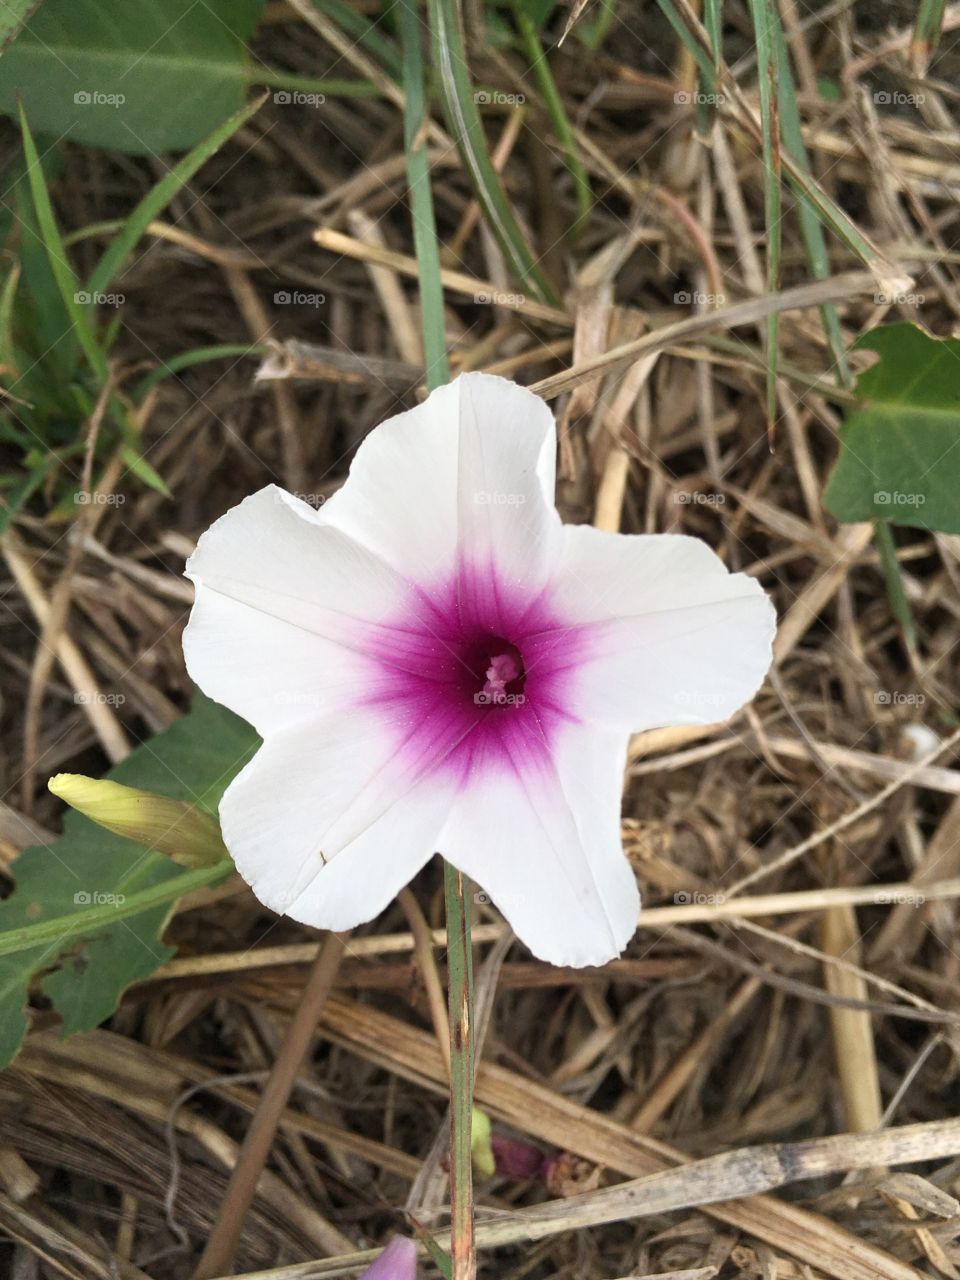 Morning glory flower